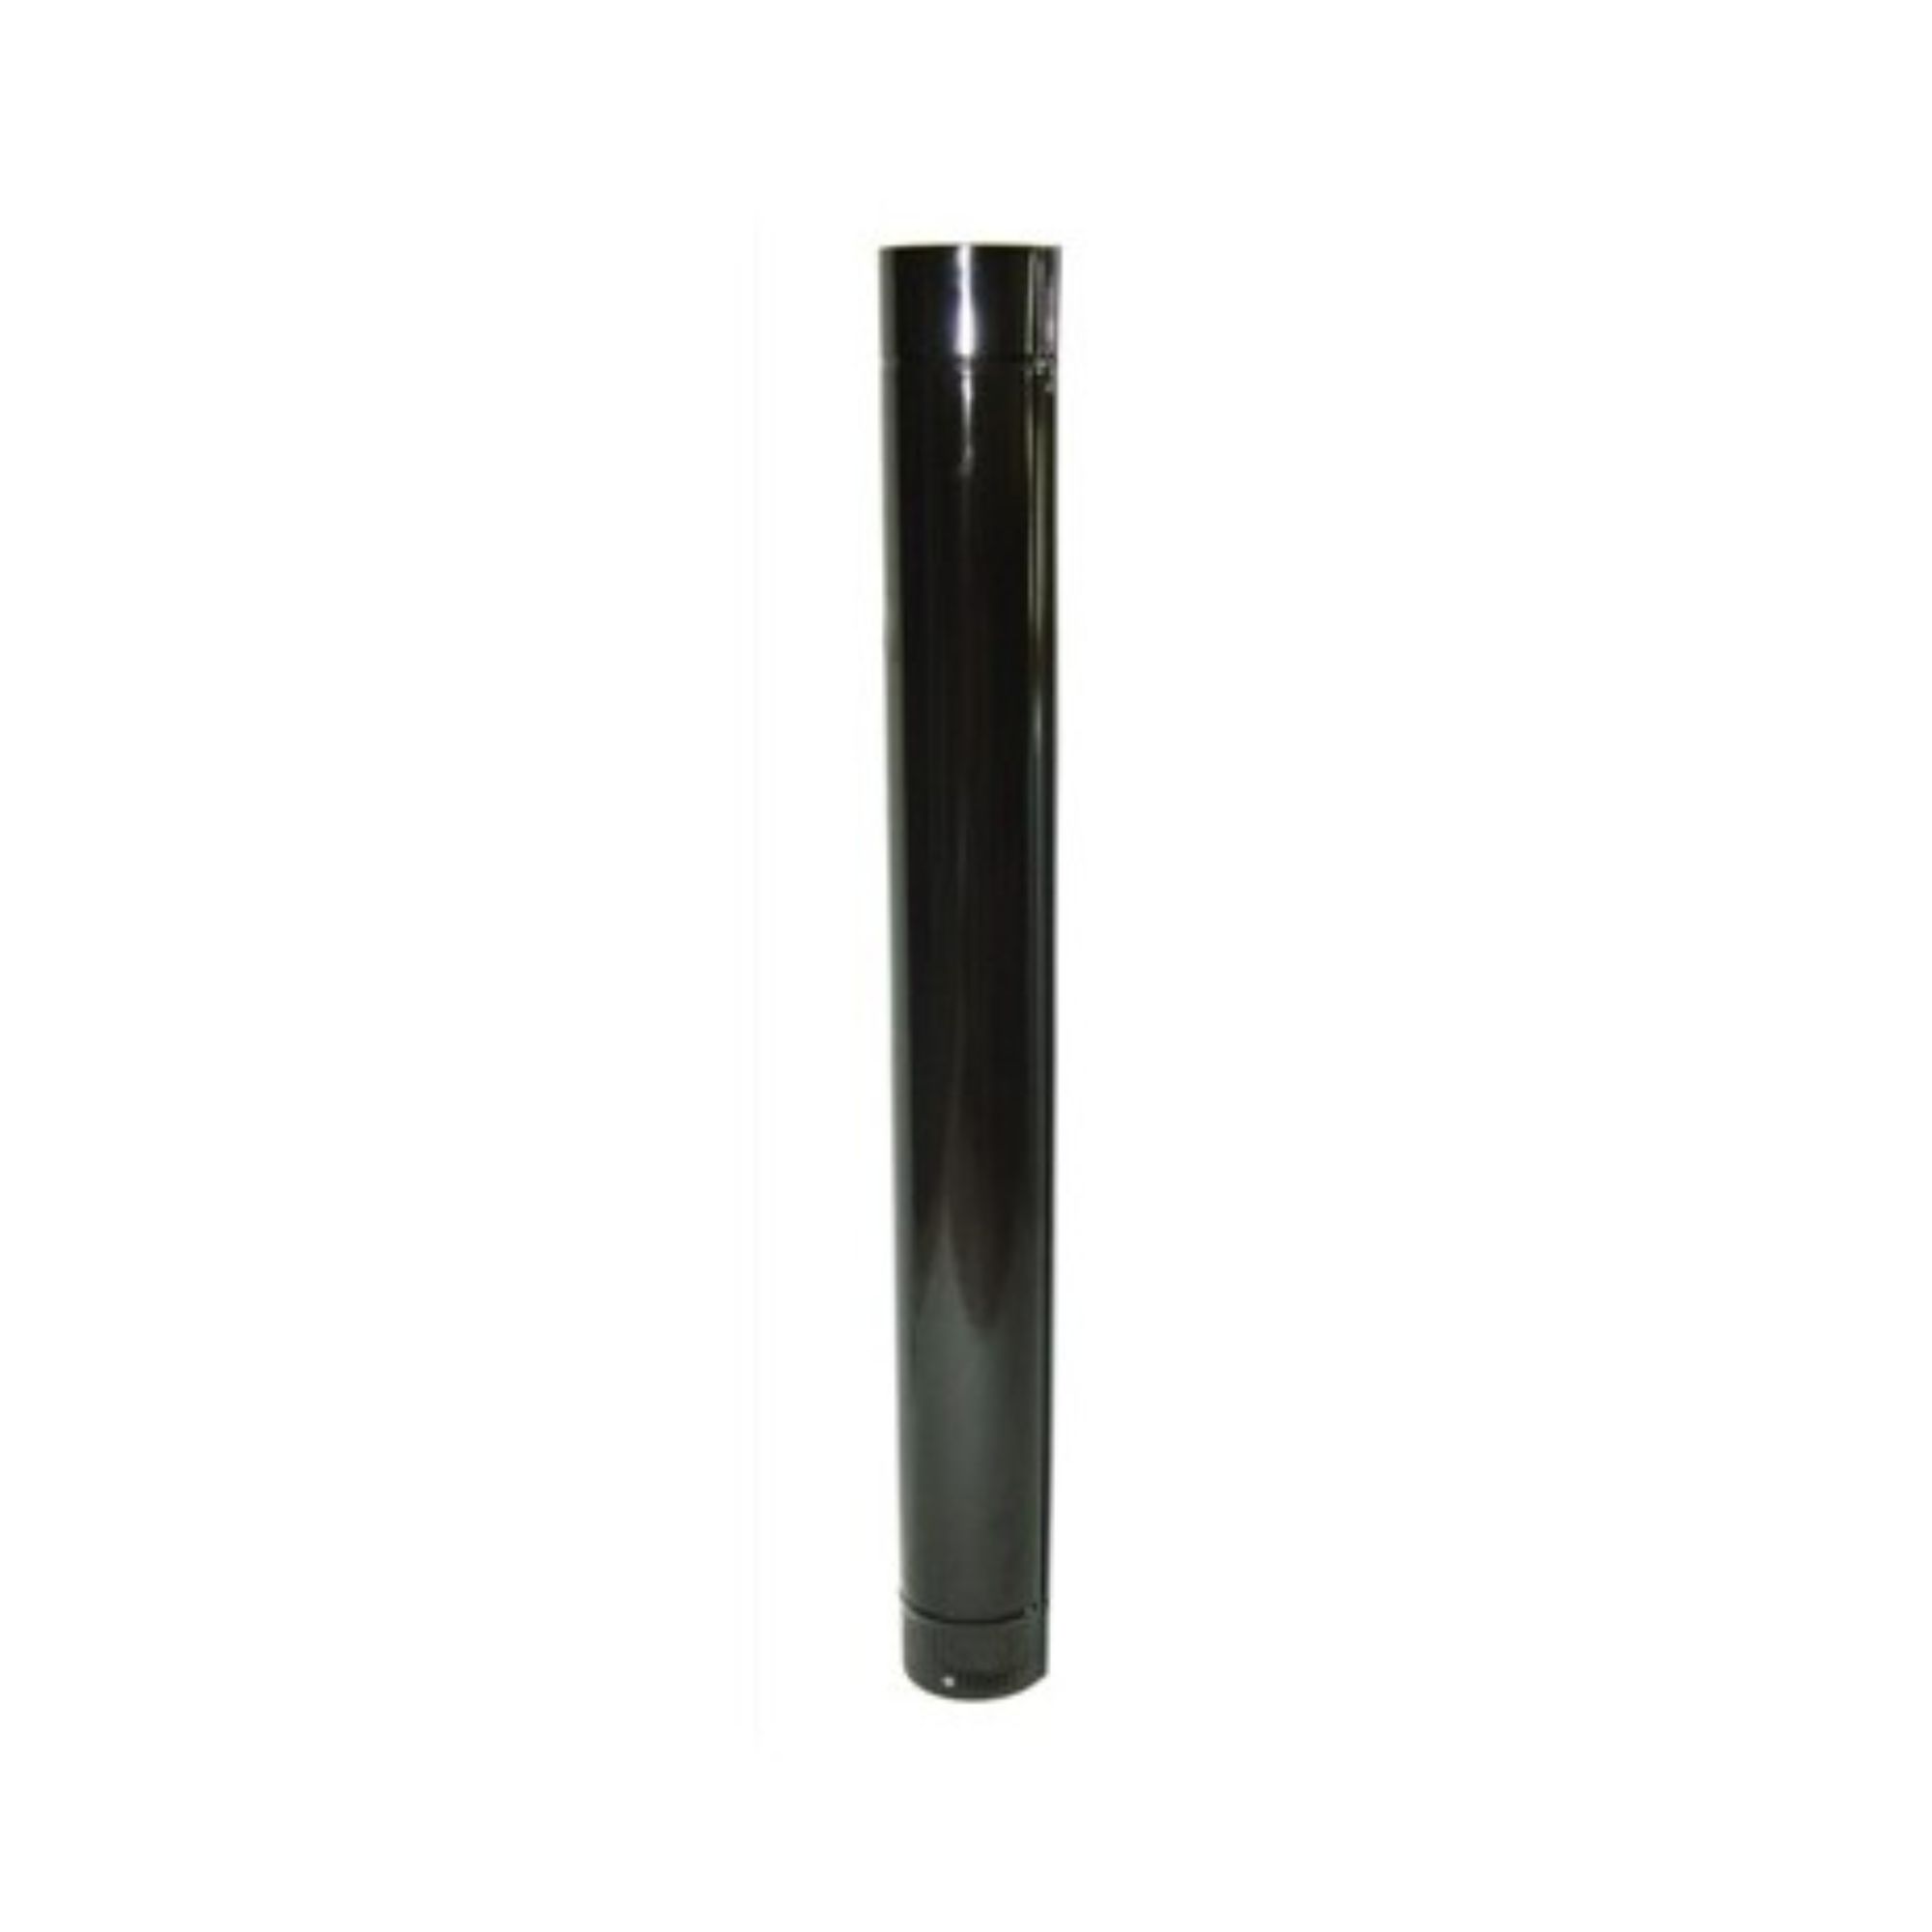 M tubo vitrificado 120x1000 - 7500105